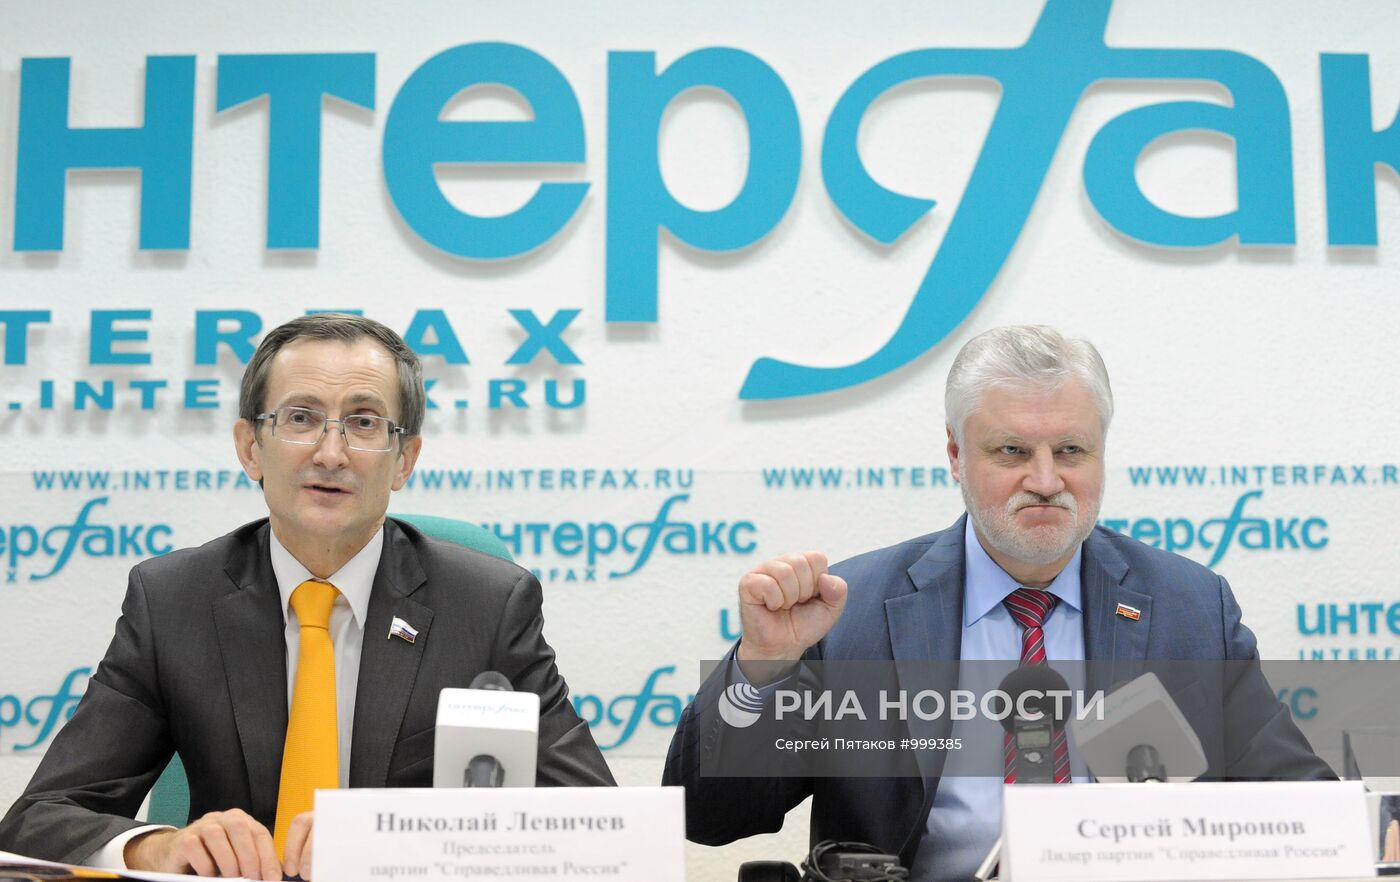 Пресс-конференция Сергея Миронова и Николая Левичева